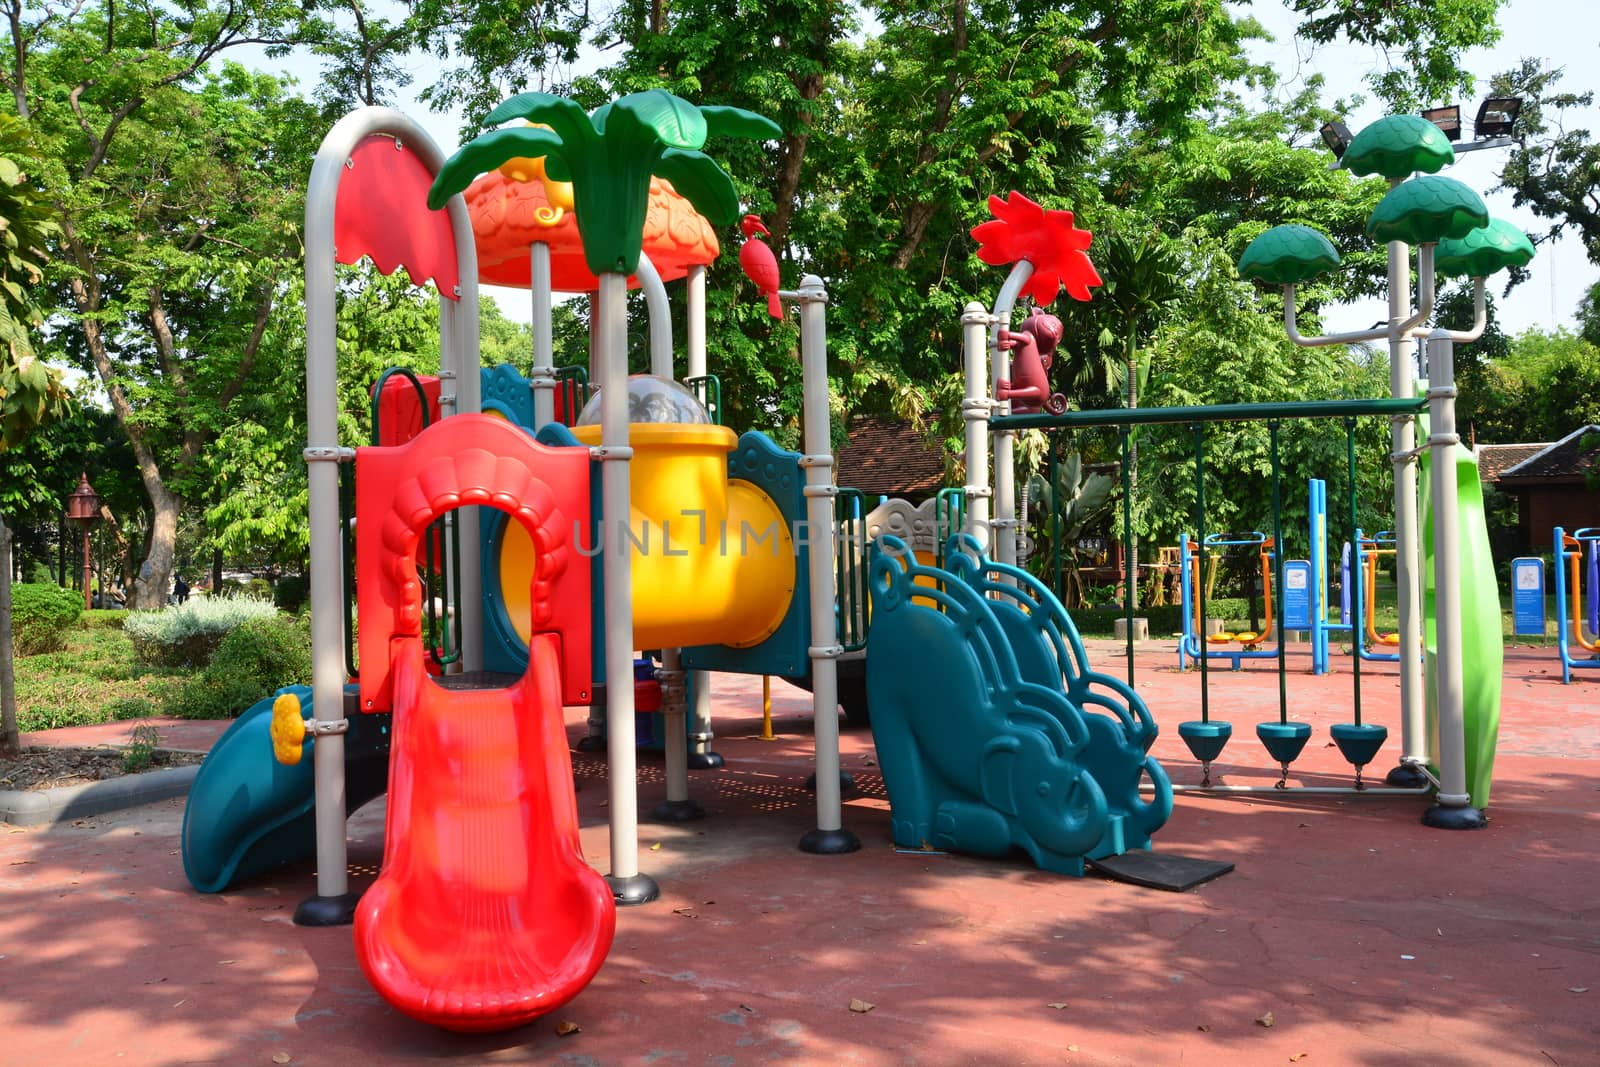 Children's playground in a city park, Playground for children.